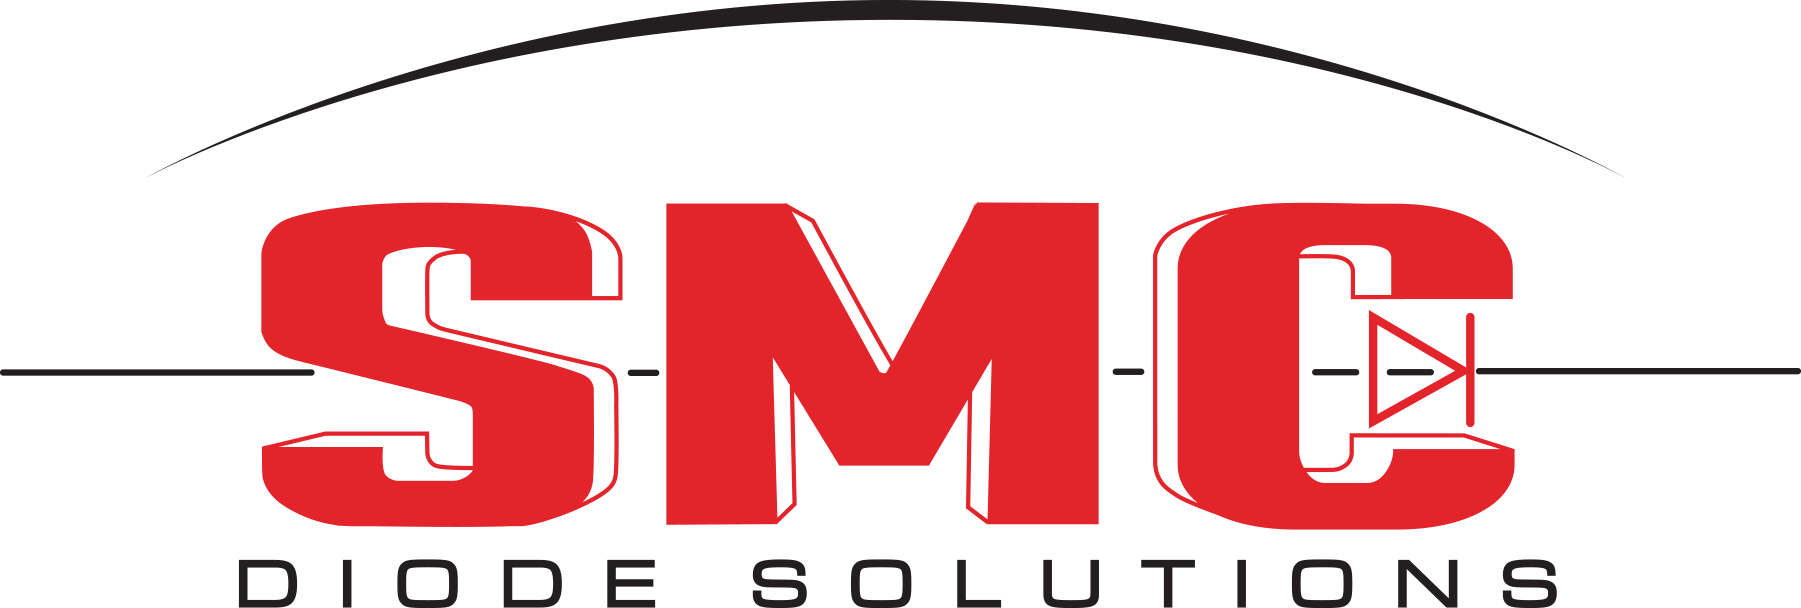 SMC Diode Solutions LOGO